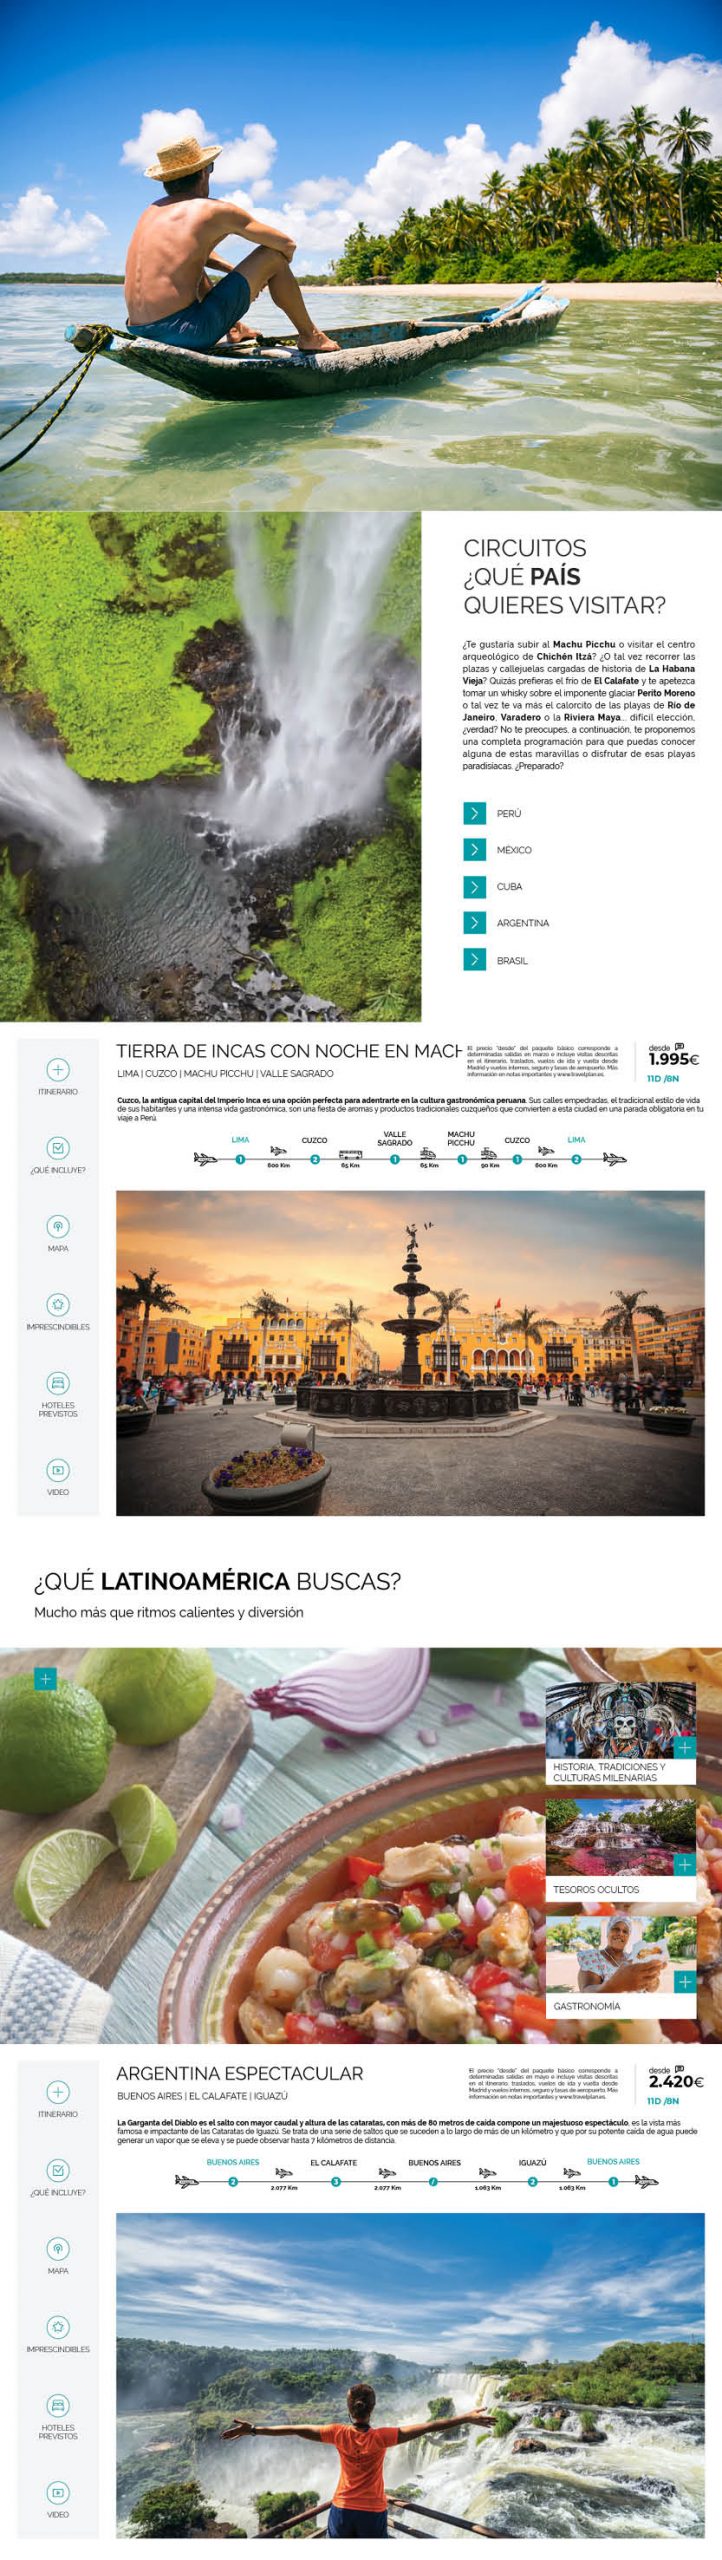 Publicaciones Interactivas. Travelplan Latinoamérica